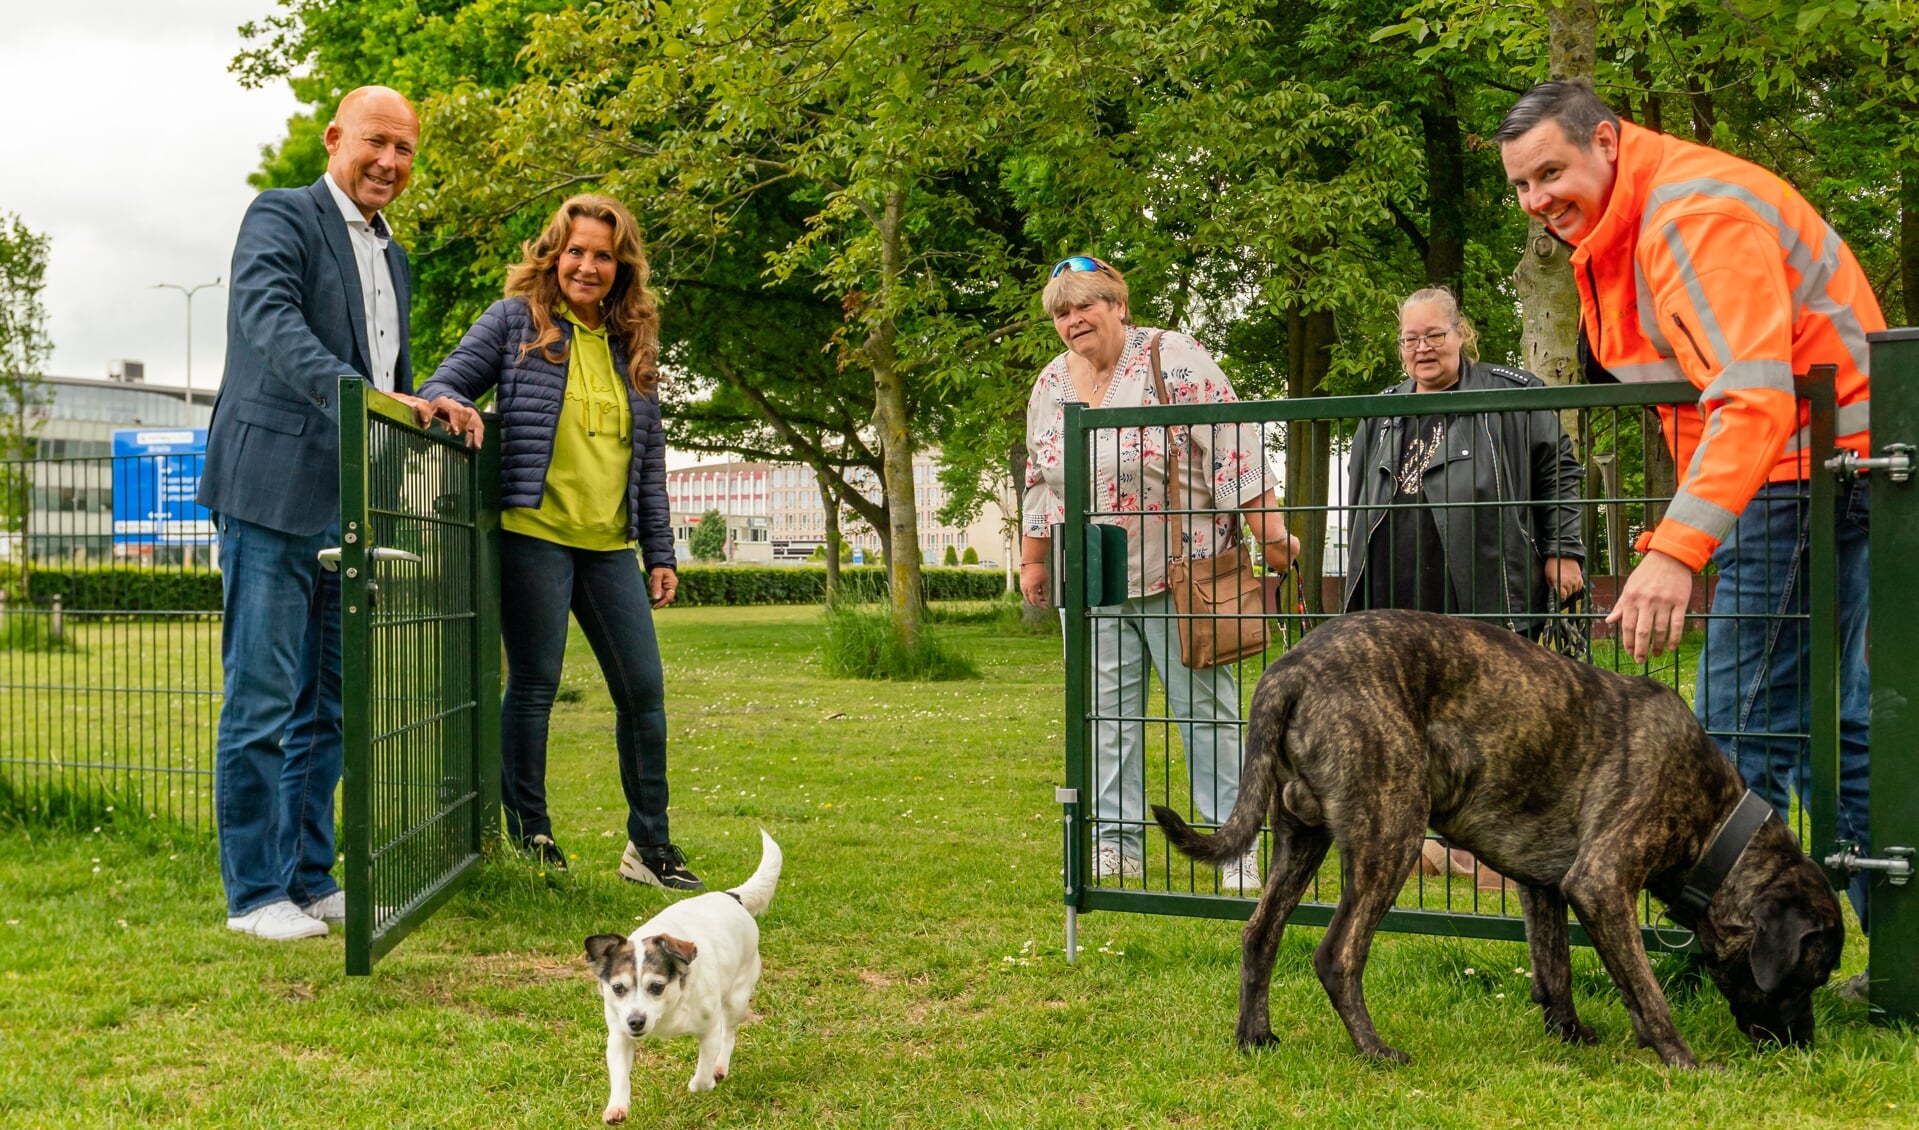 Naast een losloopplek voor honden is het uitrenveld ook een plek waar hondenbezitters samen komen voor een praatje.